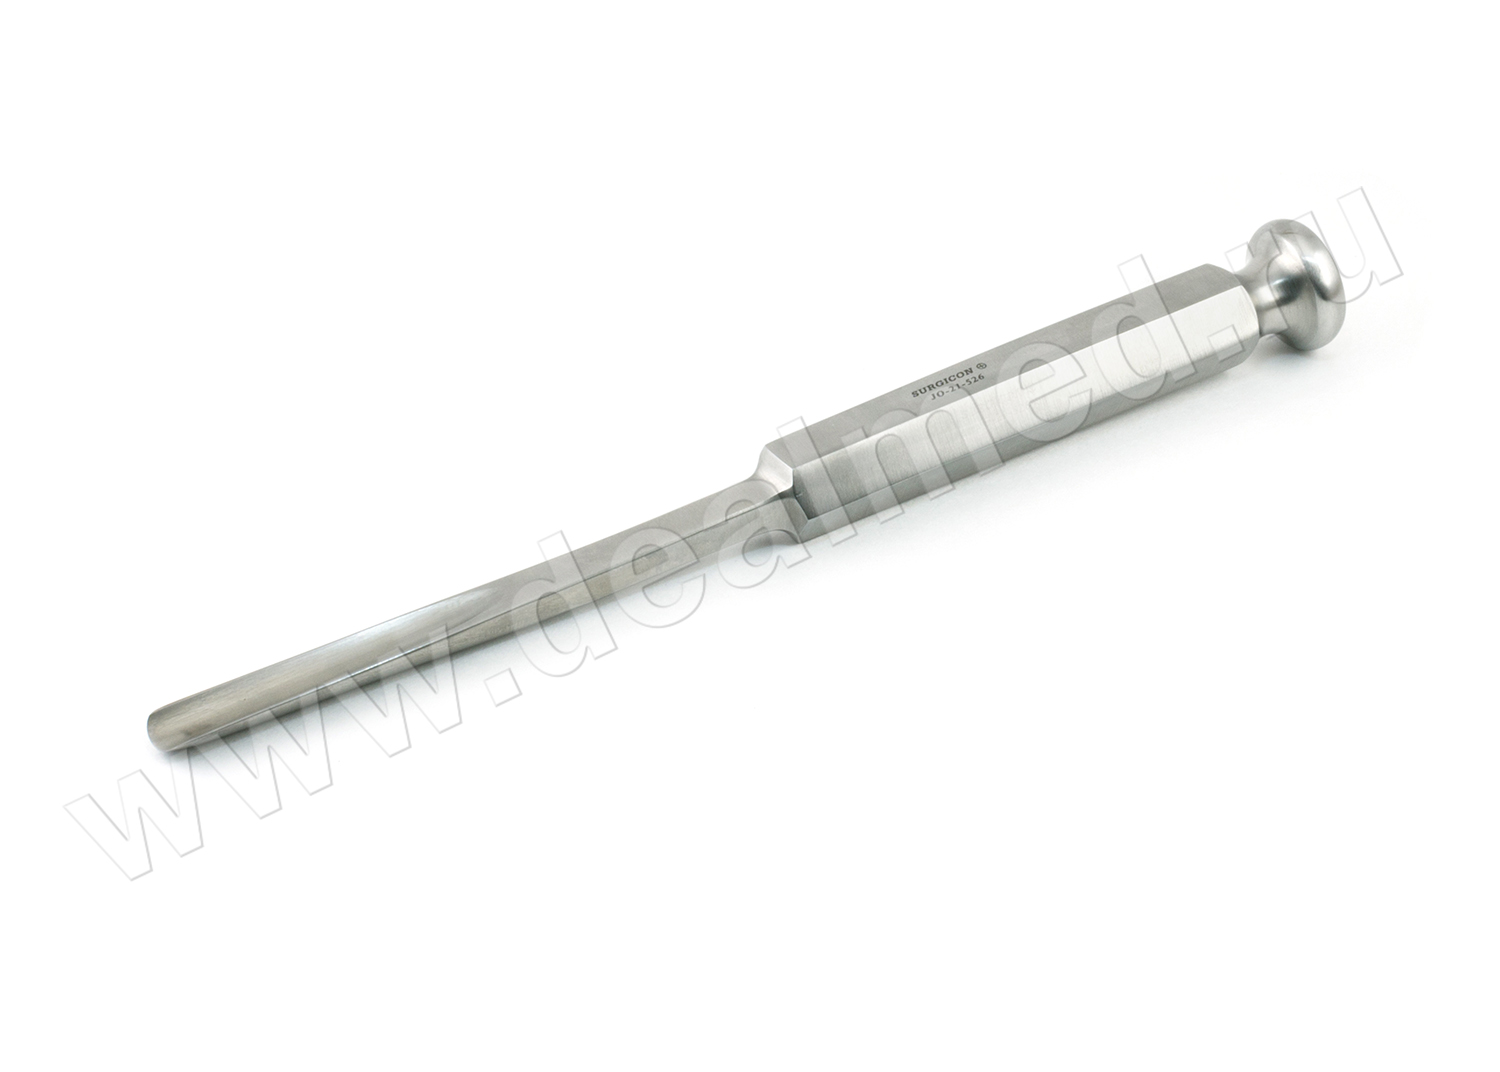 Долото с шестигранной ручкой желобоватое 10 мм JO-21-526 Surgicon, Пакистан